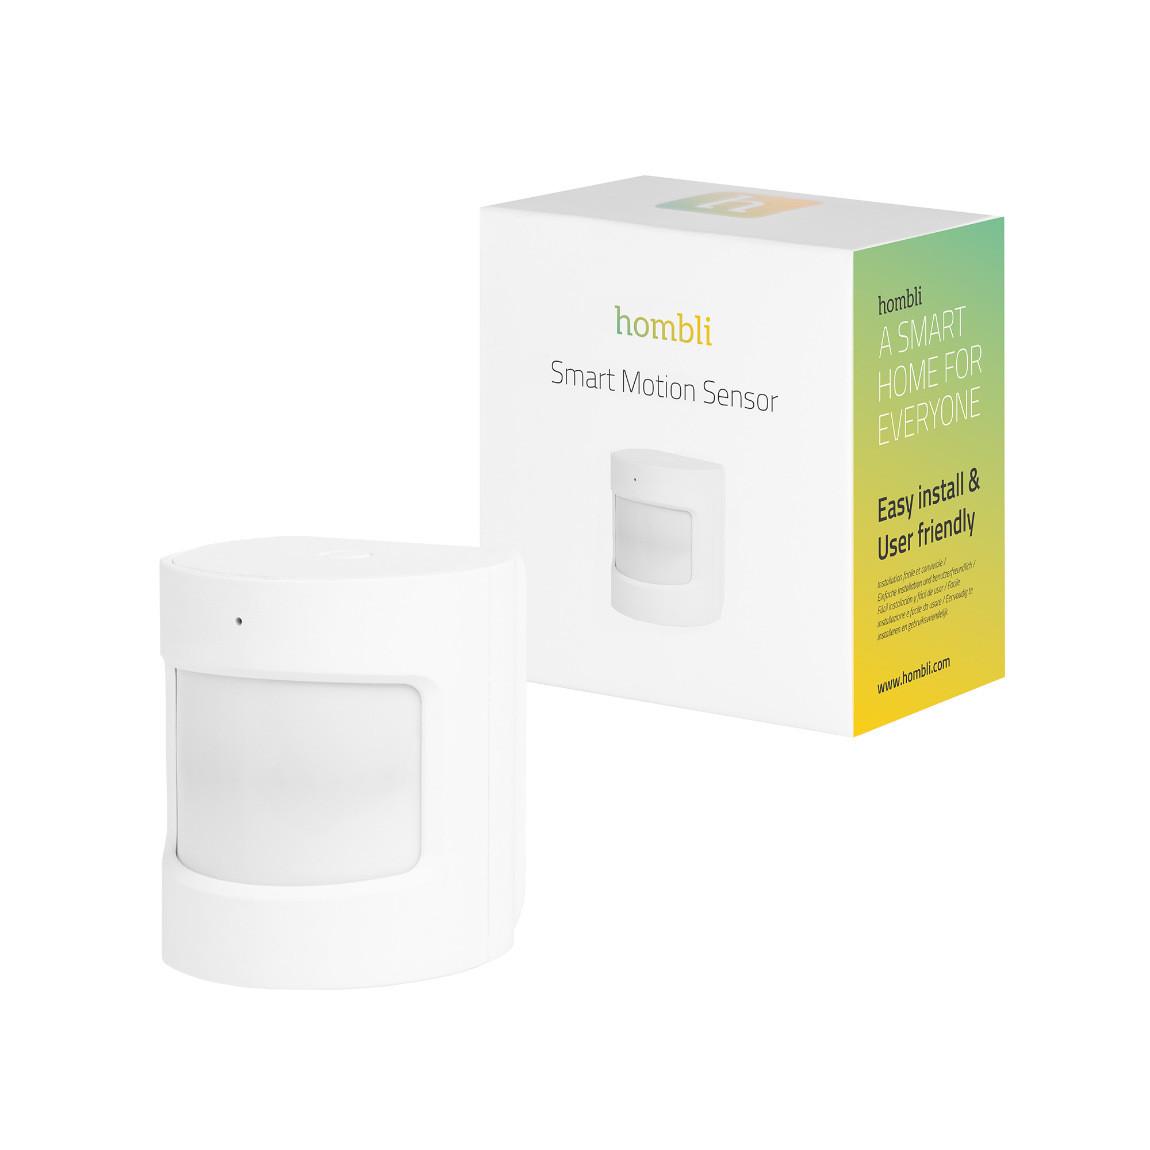 Hombli Smart Motion Sensor 3er-Set_Verpackung